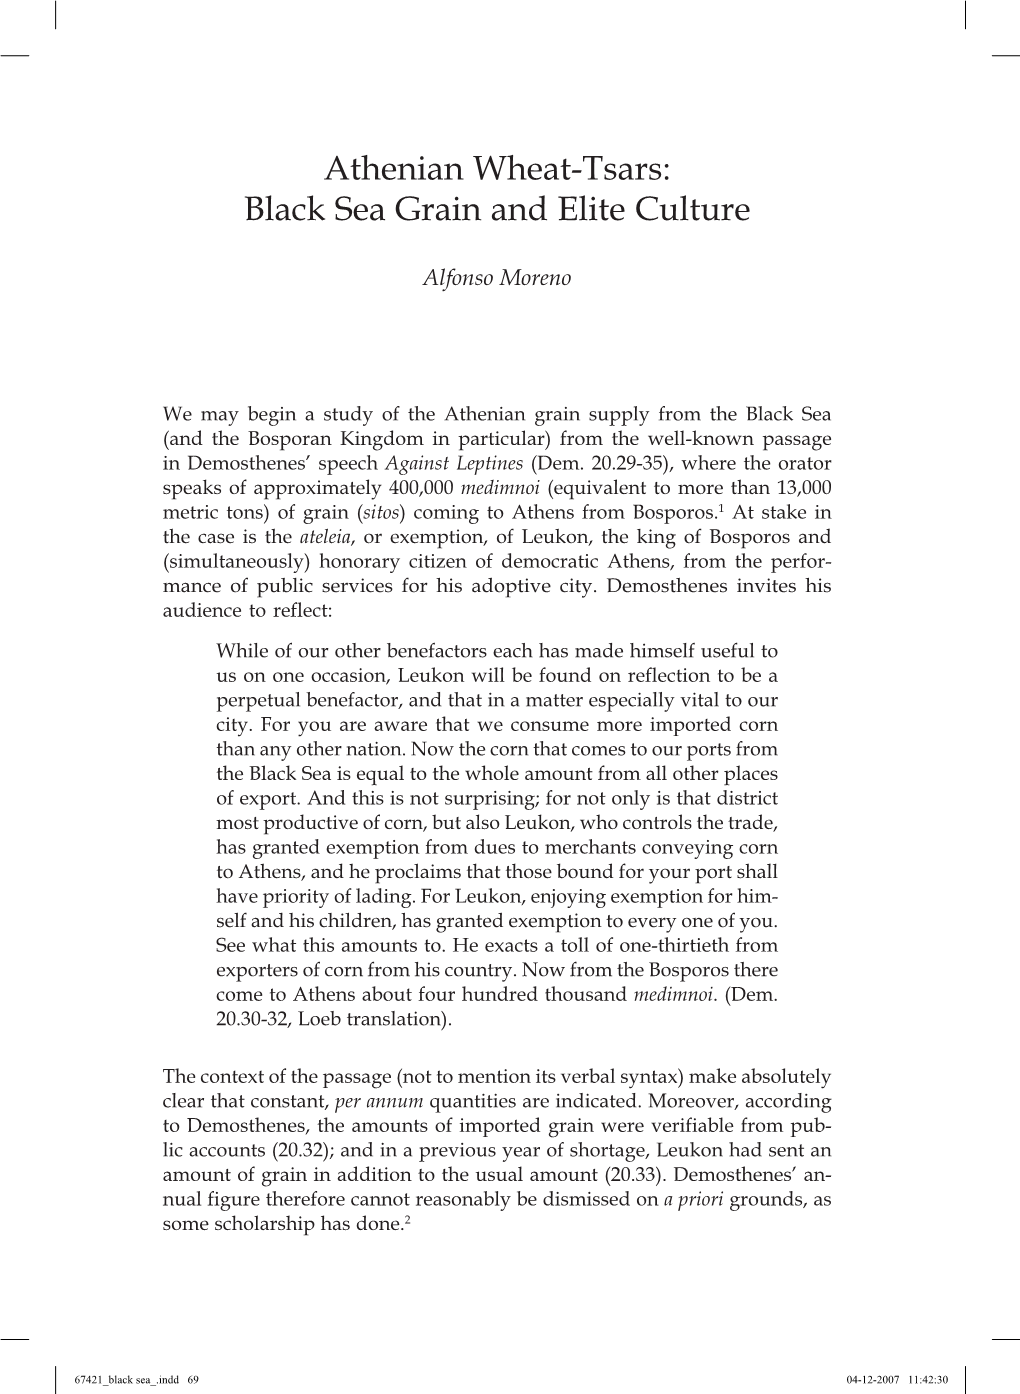 Black Sea Grain and Elite Culture